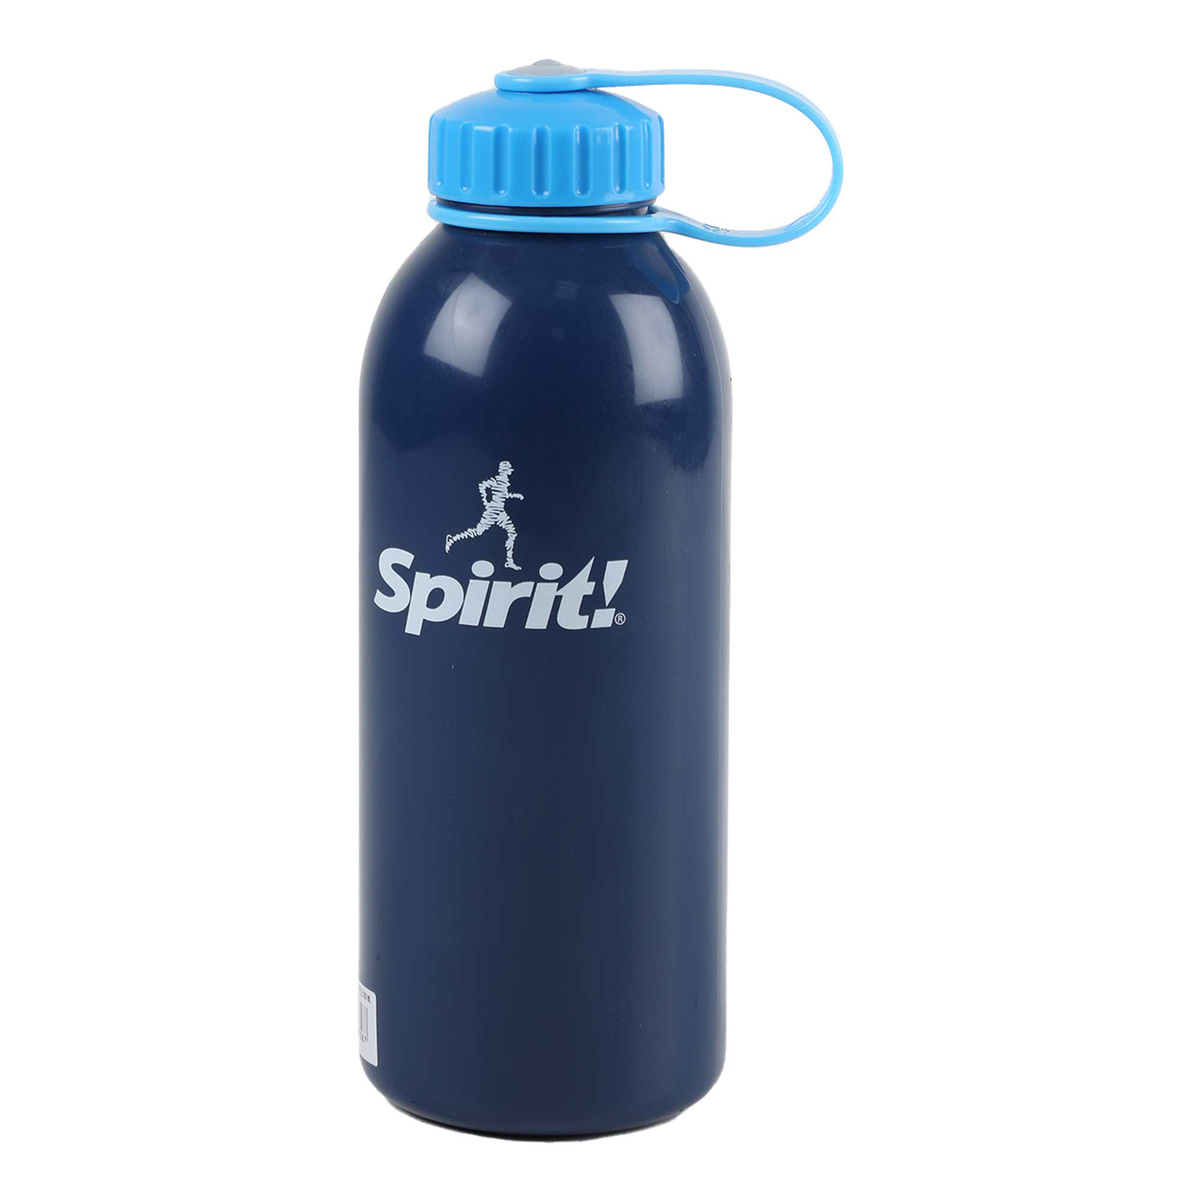 Lion Star Water Bottle 700ml